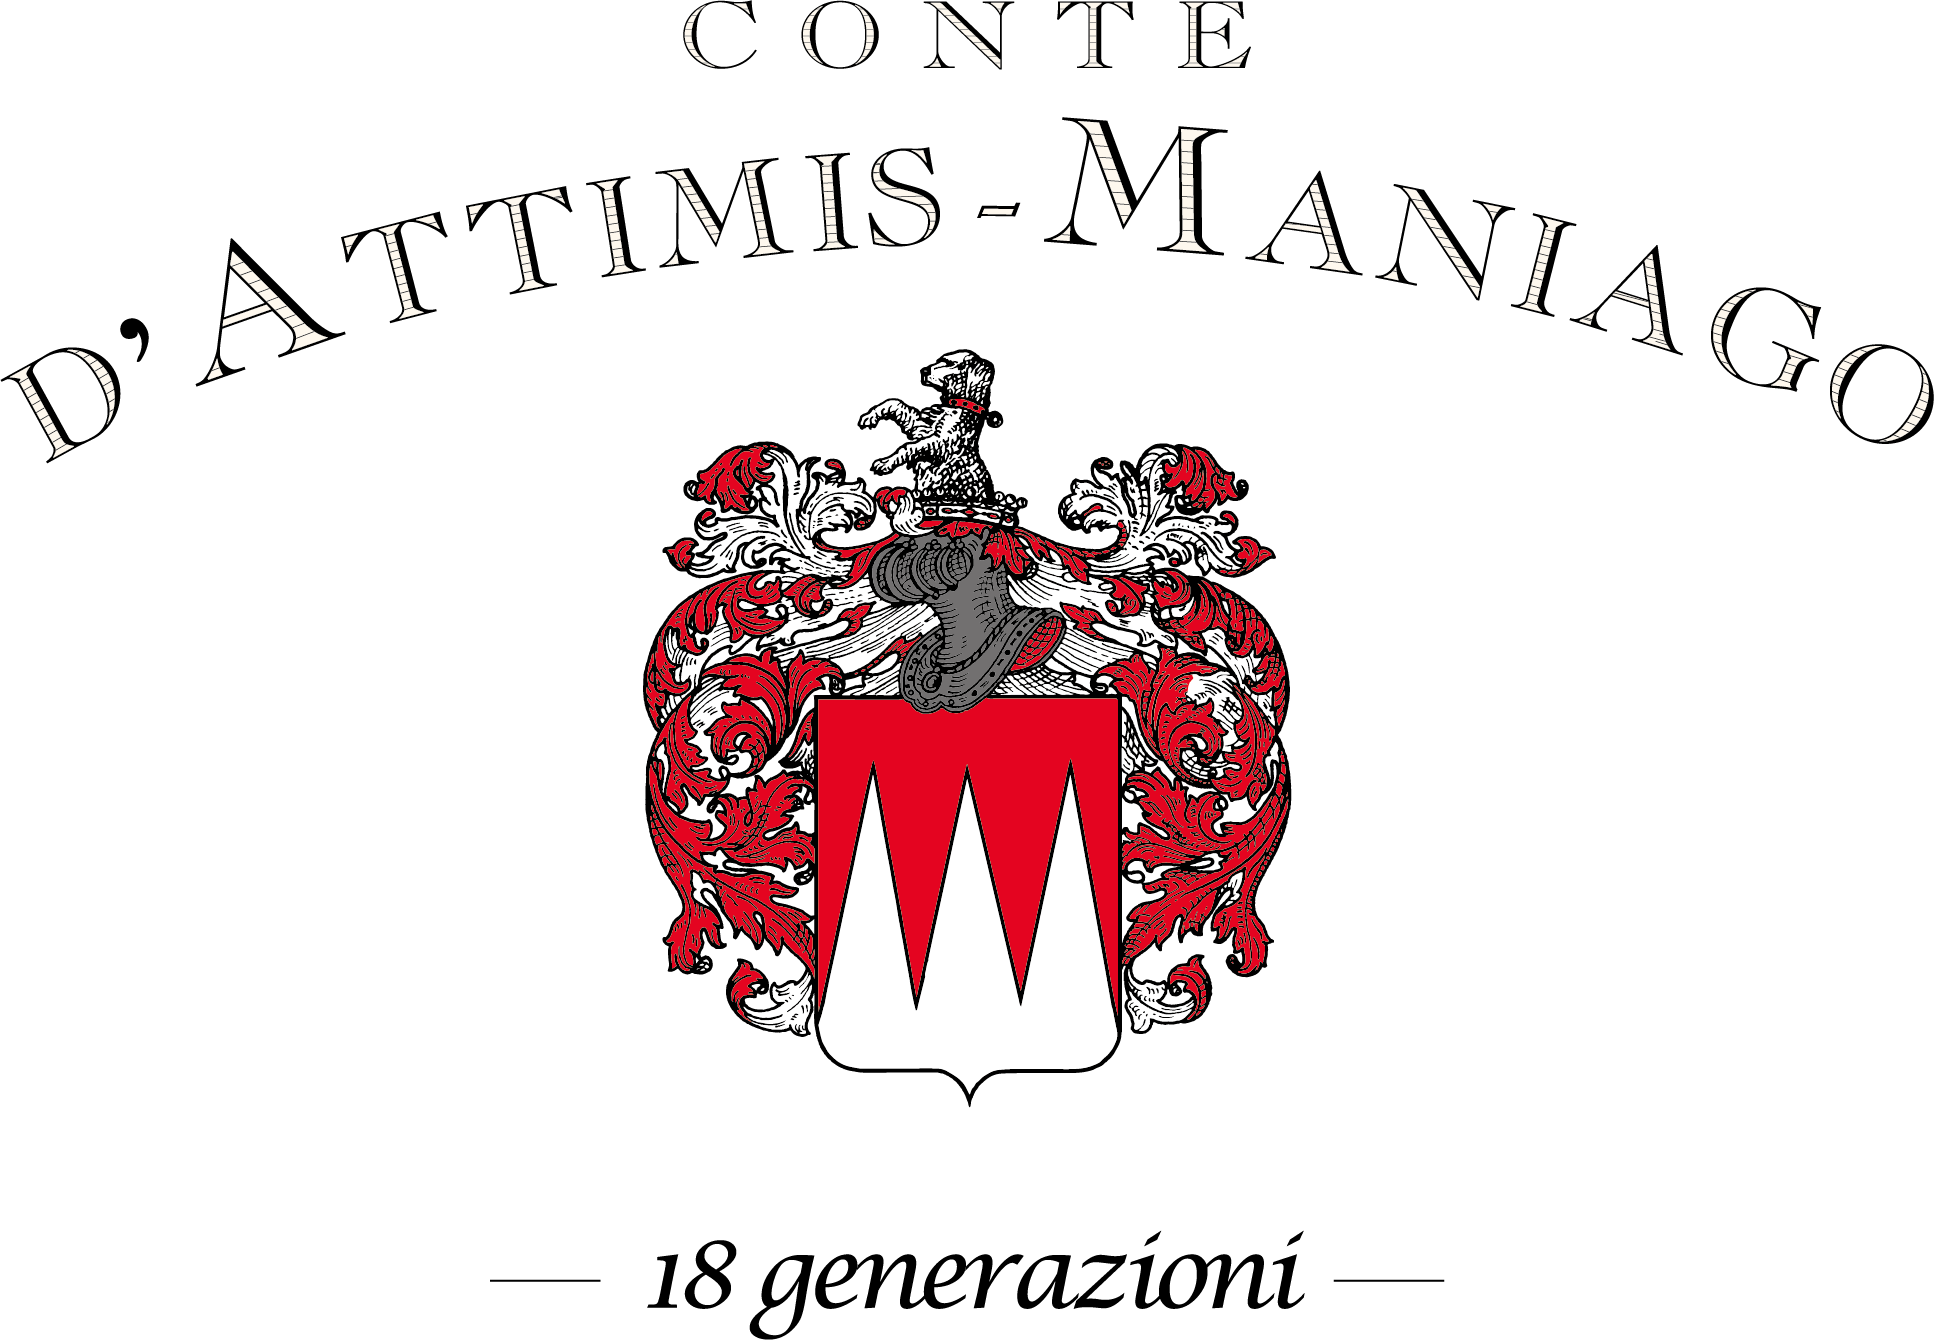 Azienda vinicola Conte d'Attimis - Maniago